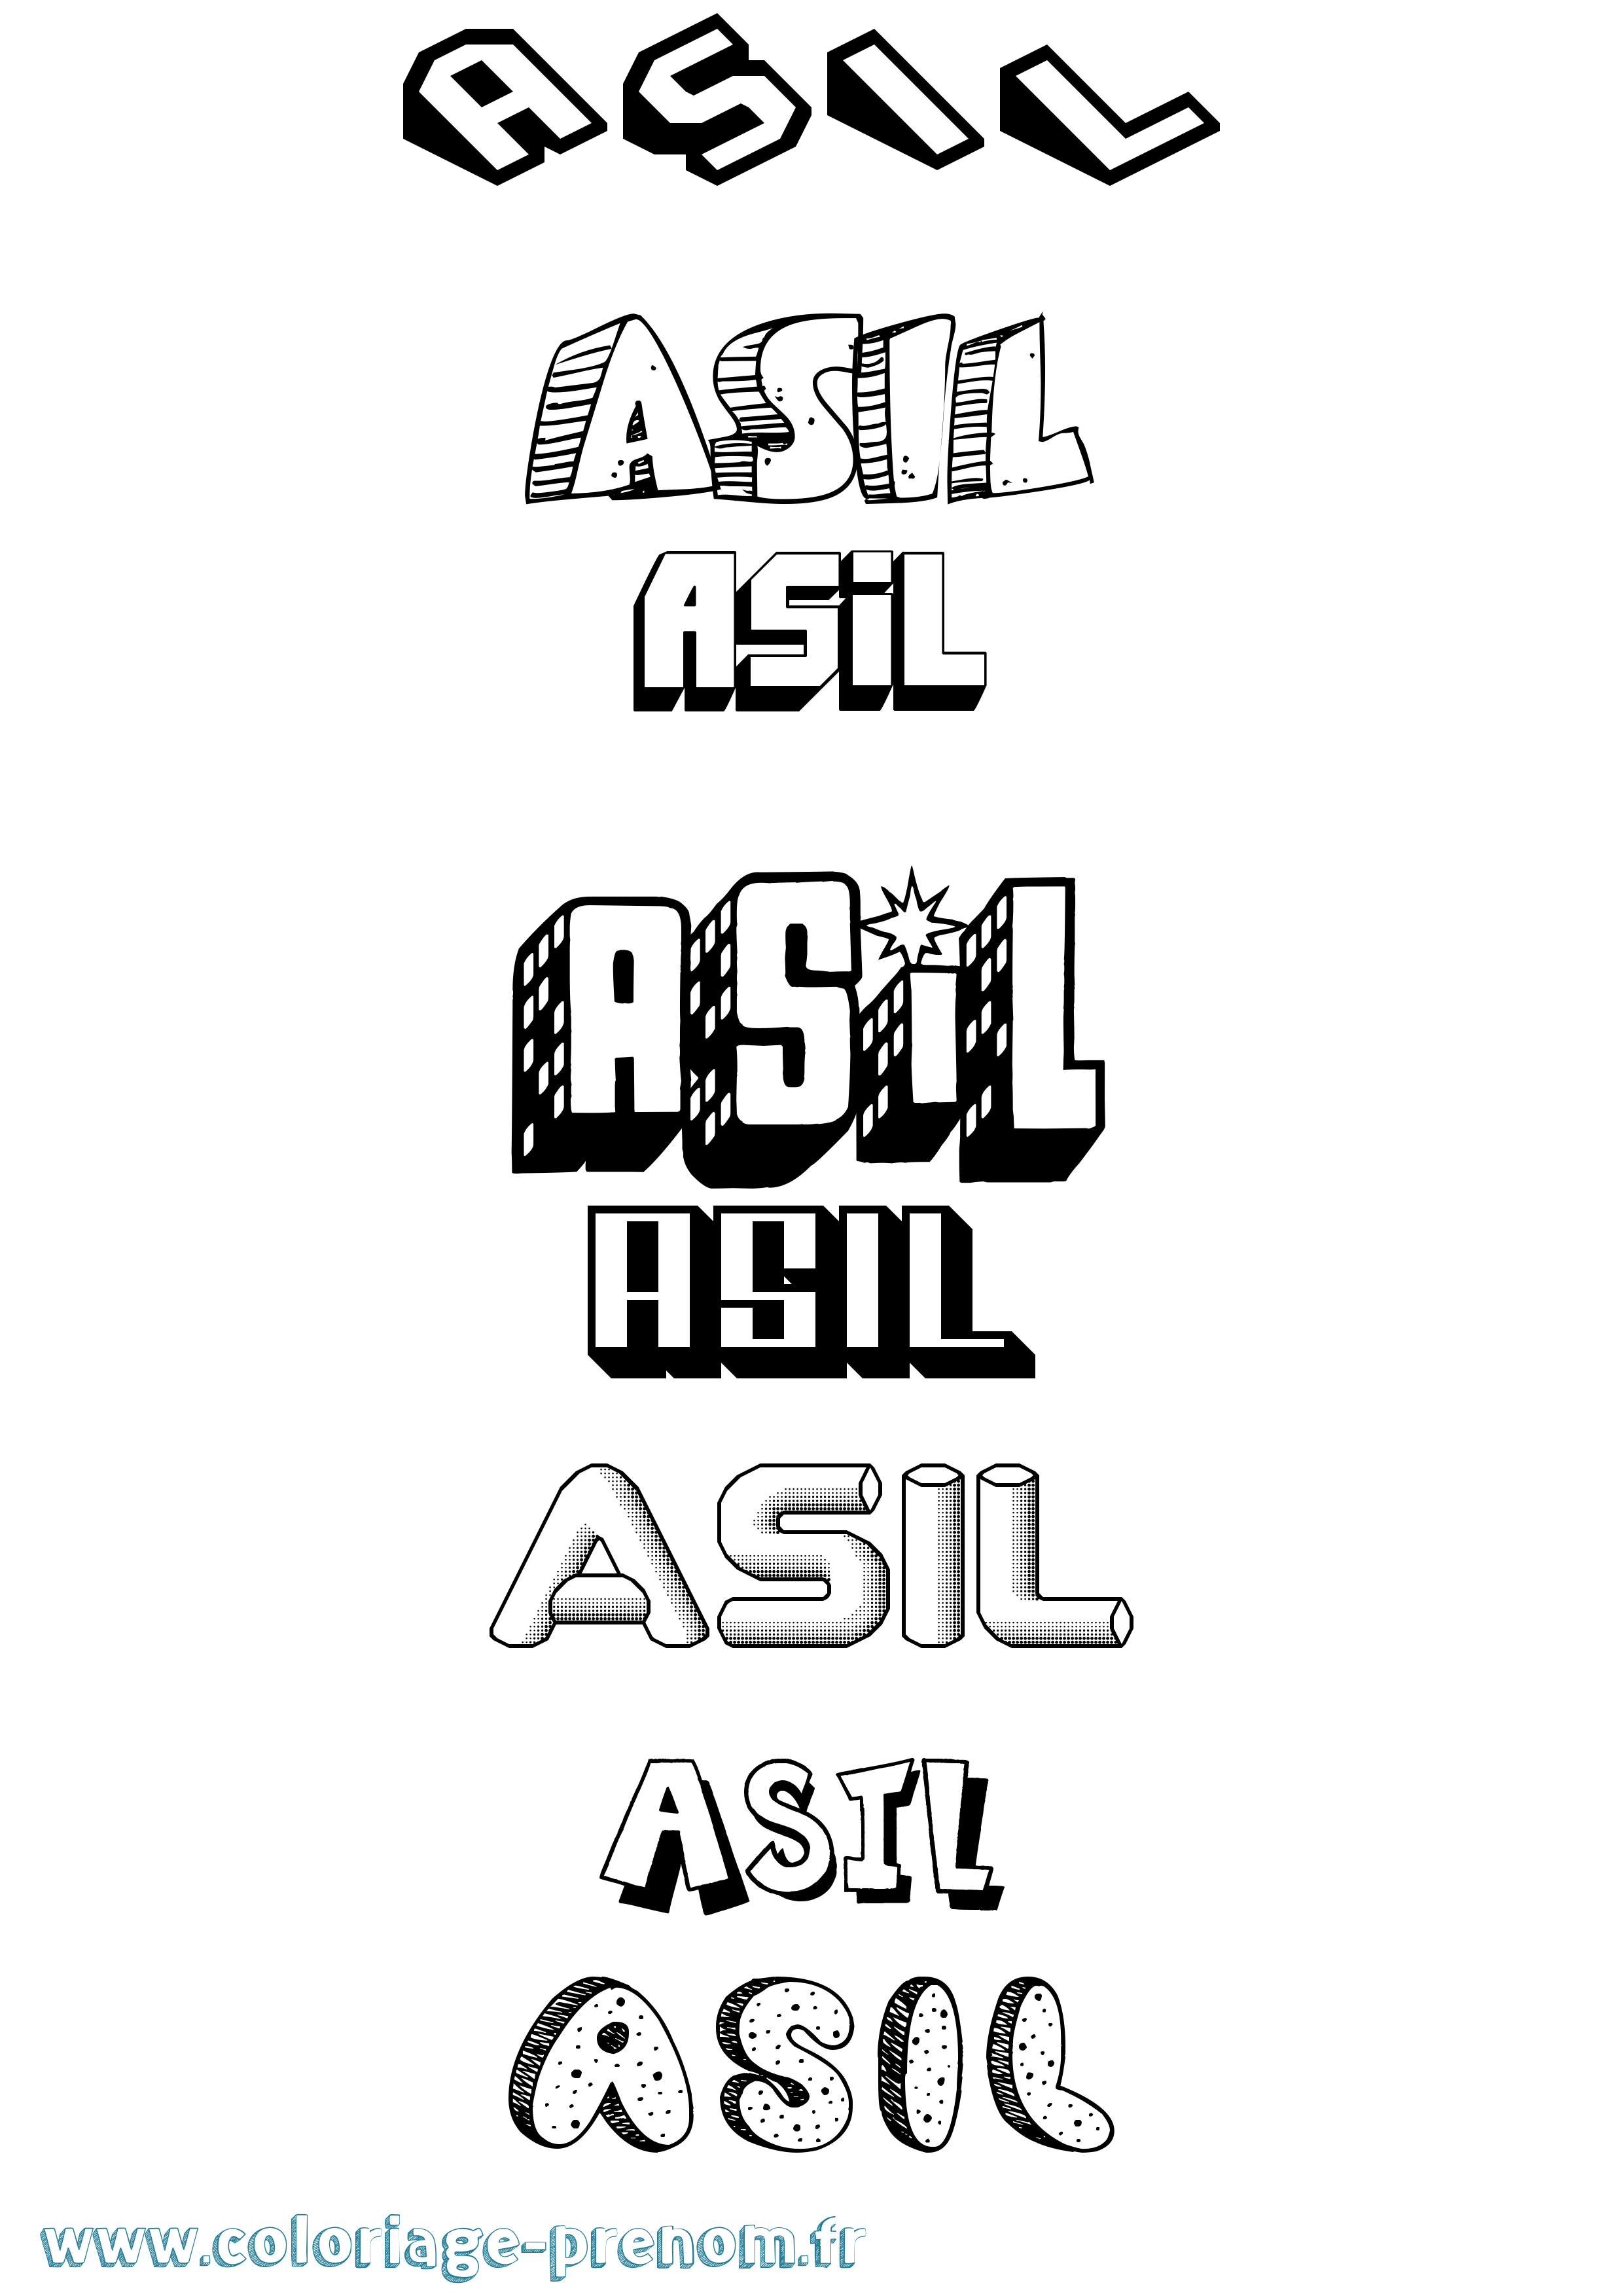 Coloriage prénom Asil Effet 3D